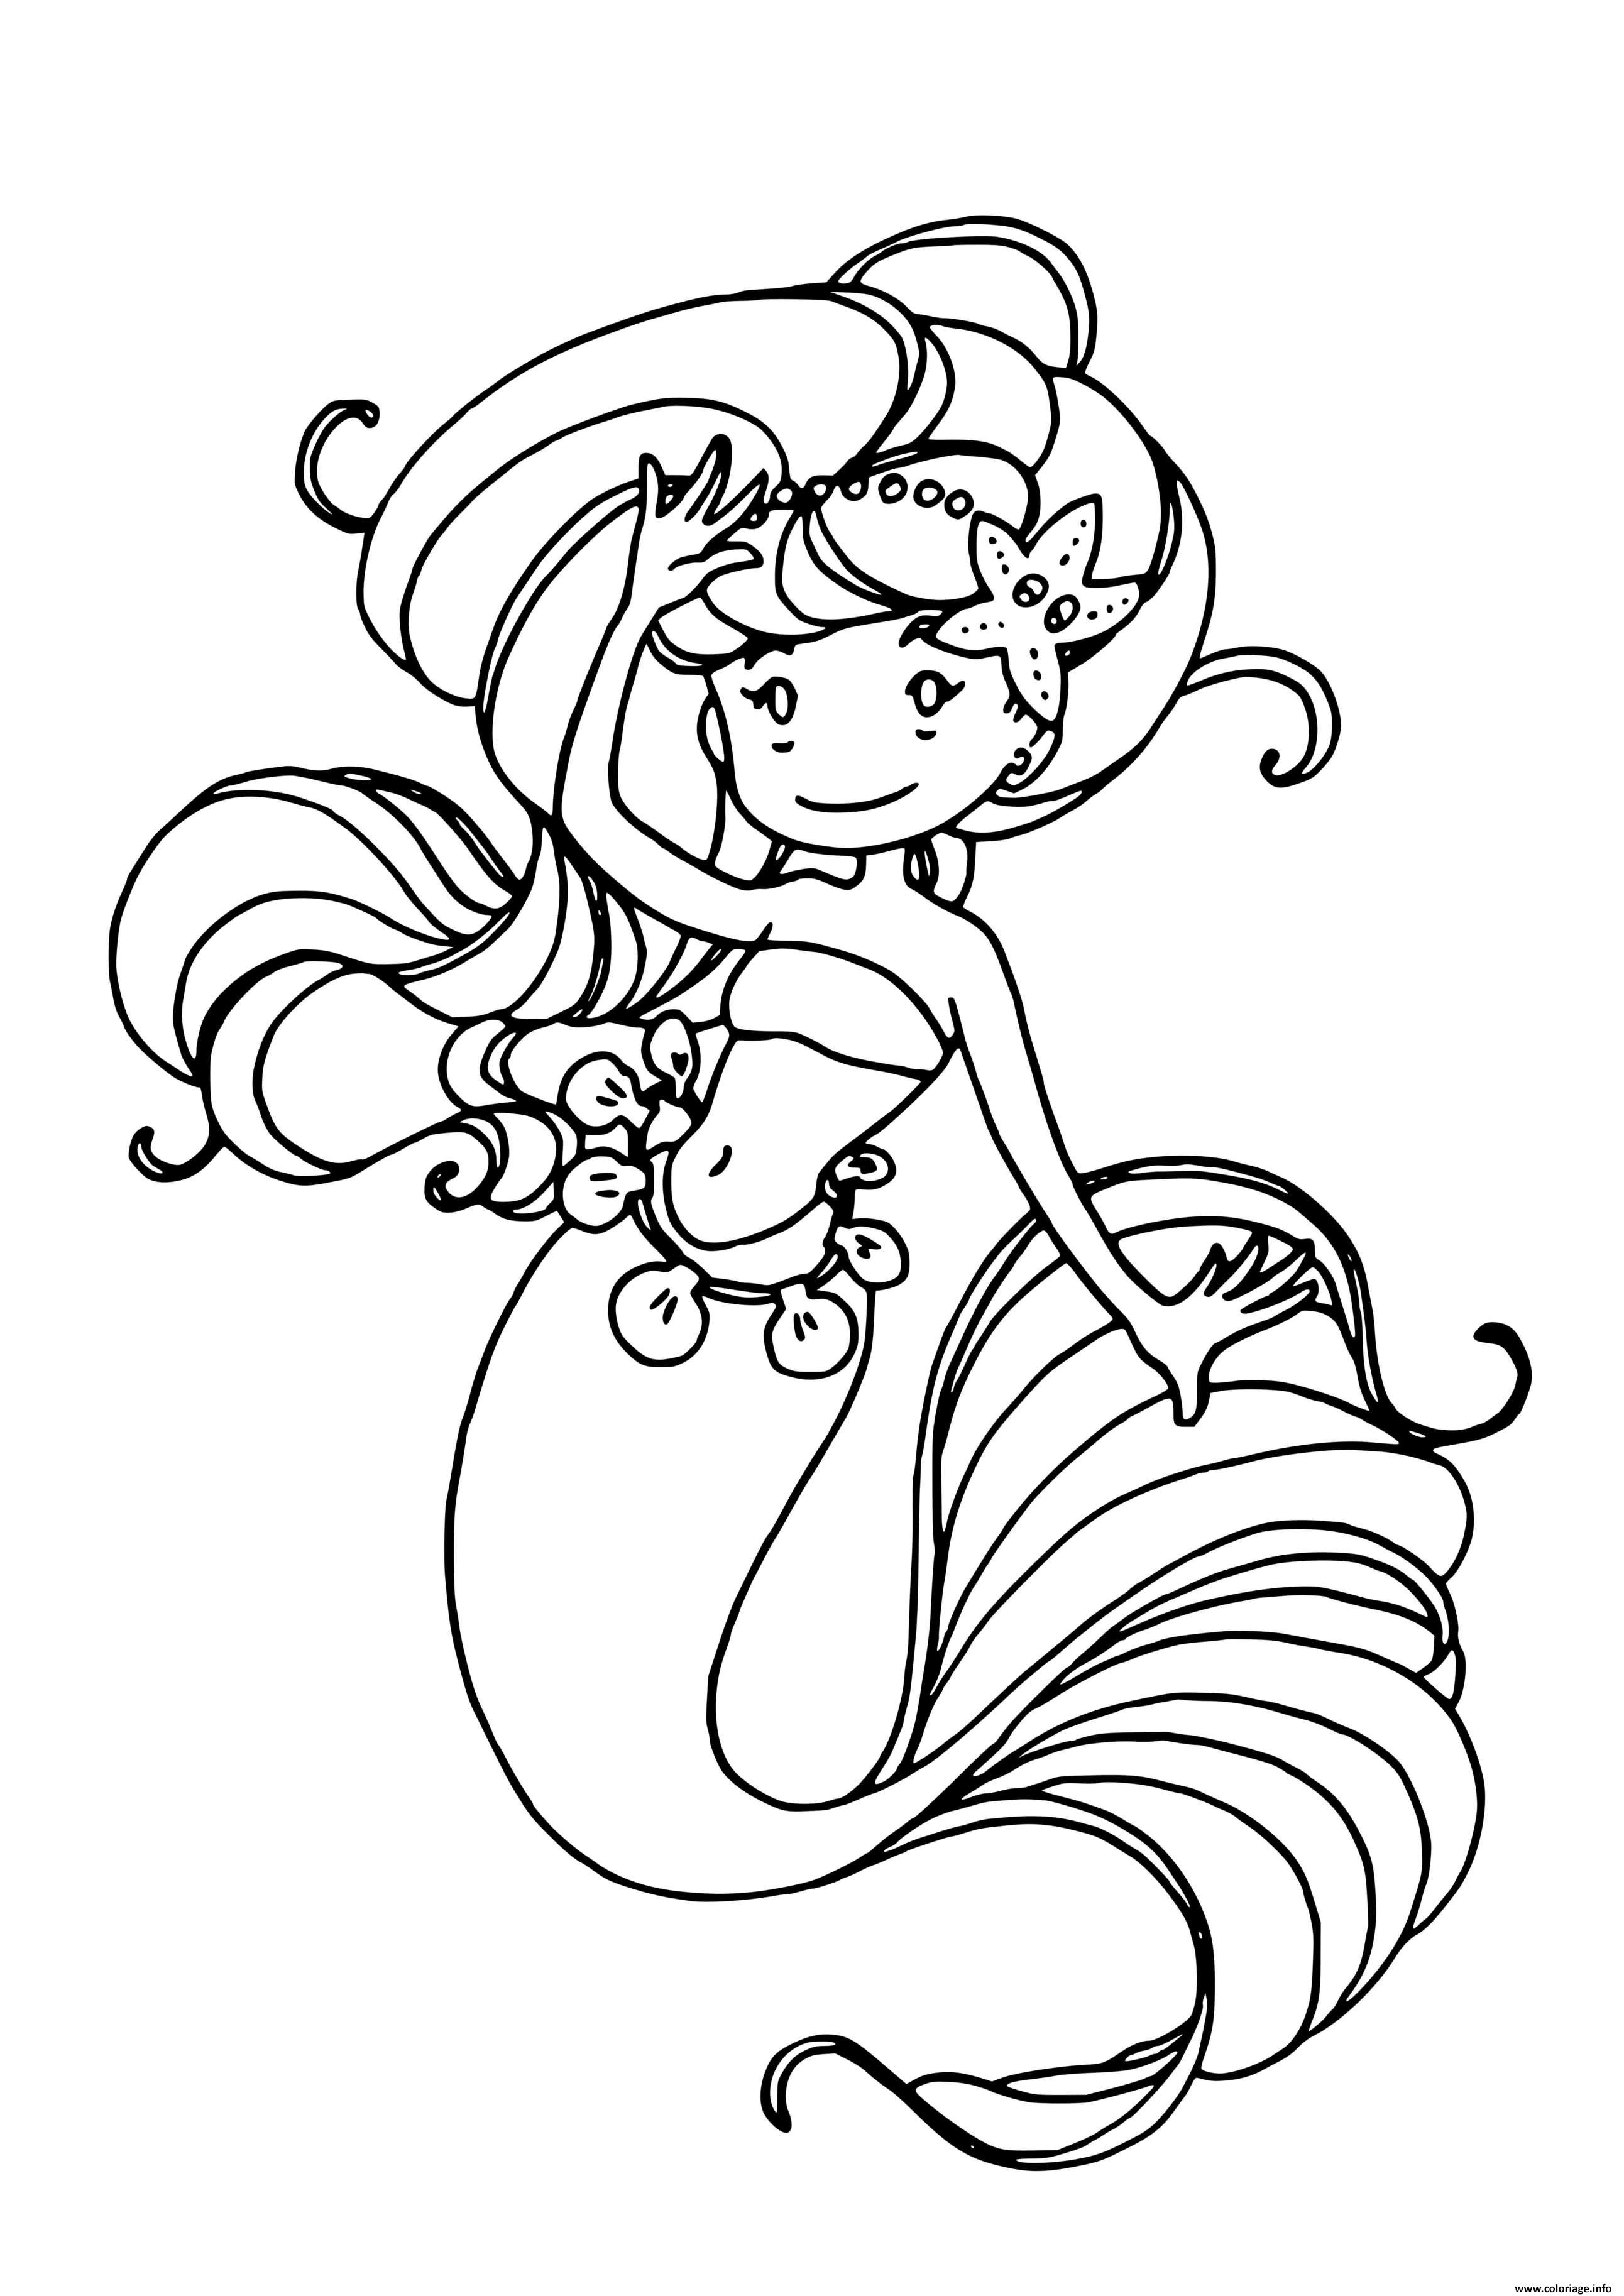 Dessin sirene enfant princesse avec de jolie cheveux Coloriage Gratuit à Imprimer